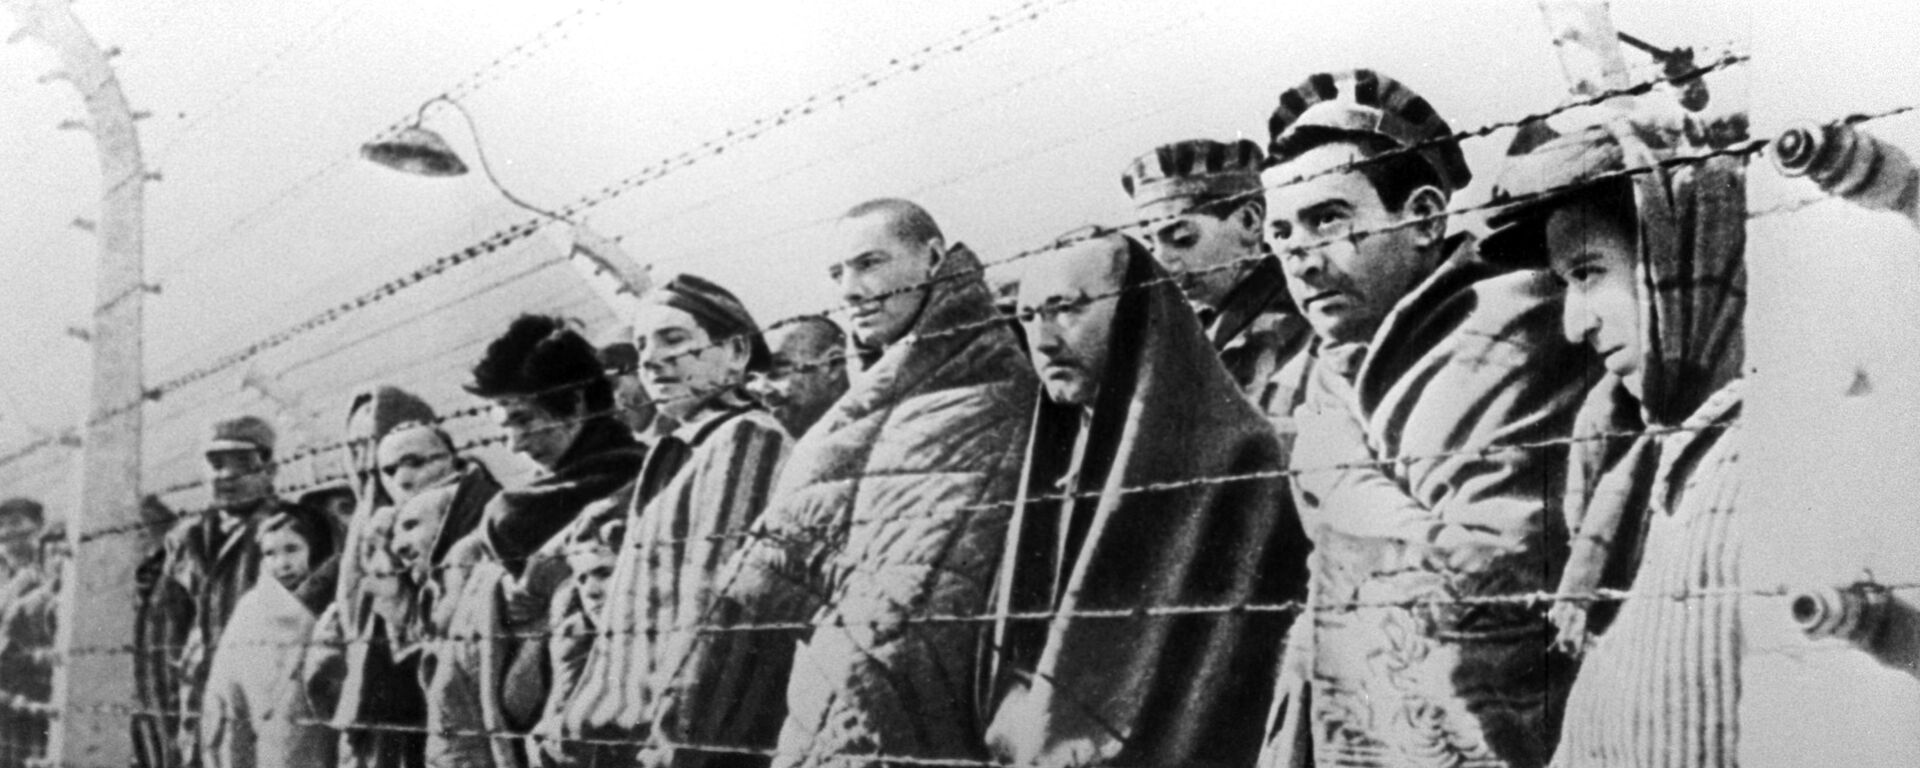 Uzniki konsentratsionnogo lagerya Osvensim, osvobojdennie voyskami Krasnoy armii v yanvare 1945 goda - Sputnik O‘zbekiston, 1920, 04.02.2020